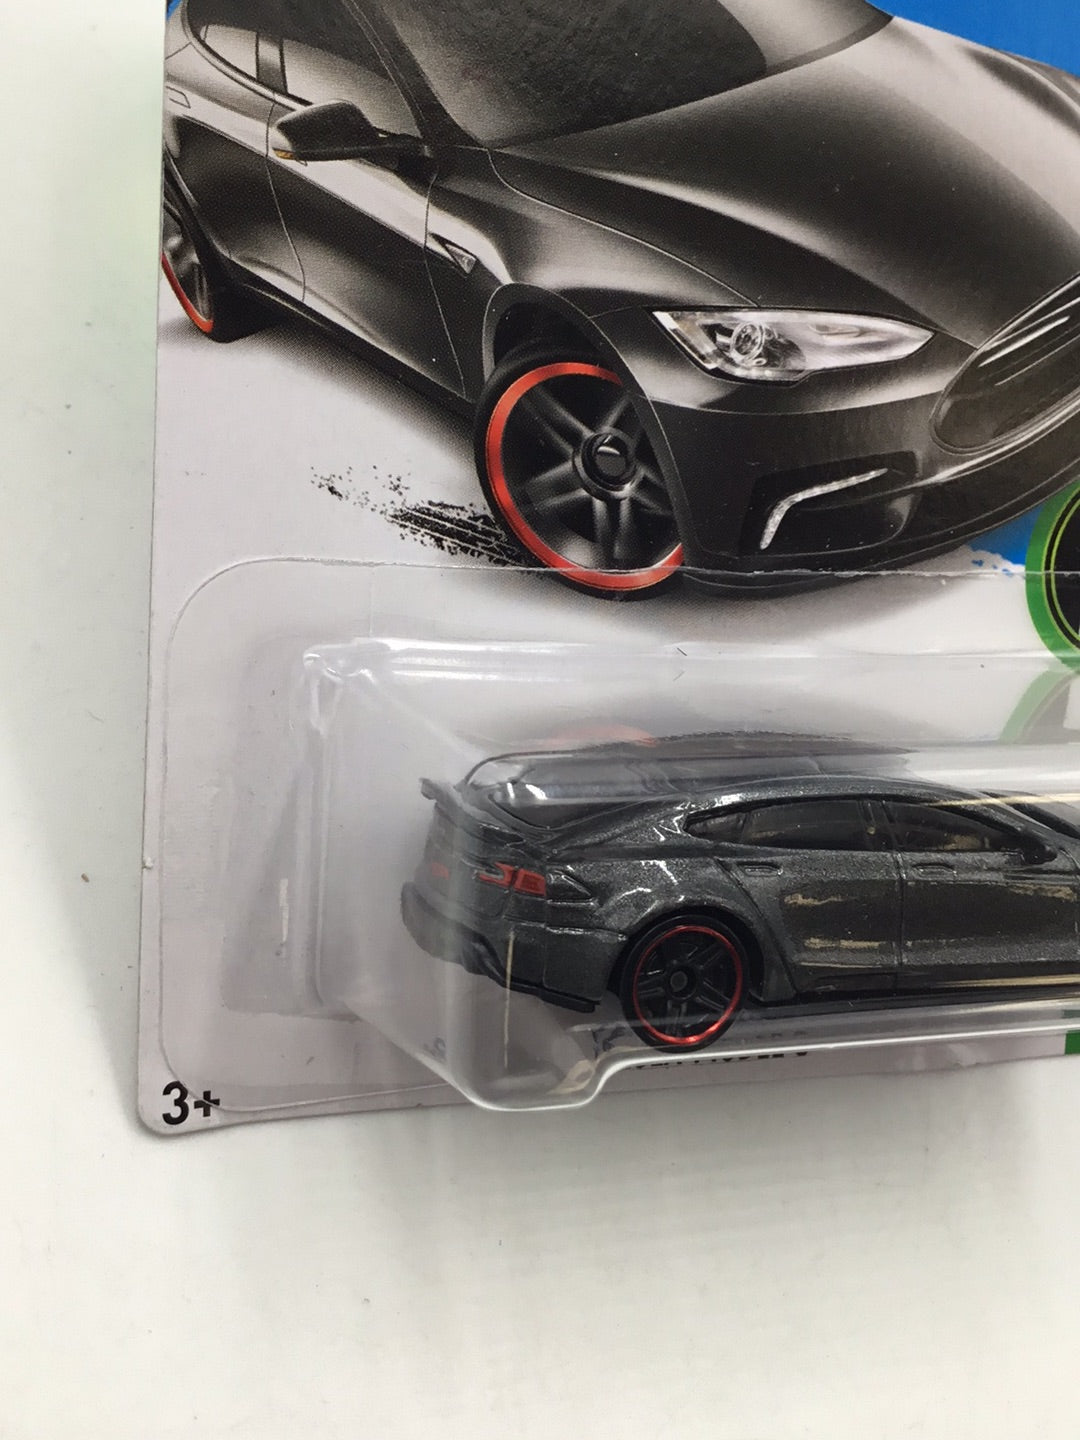 2016 hot wheels #242 Tesla Model S Z2